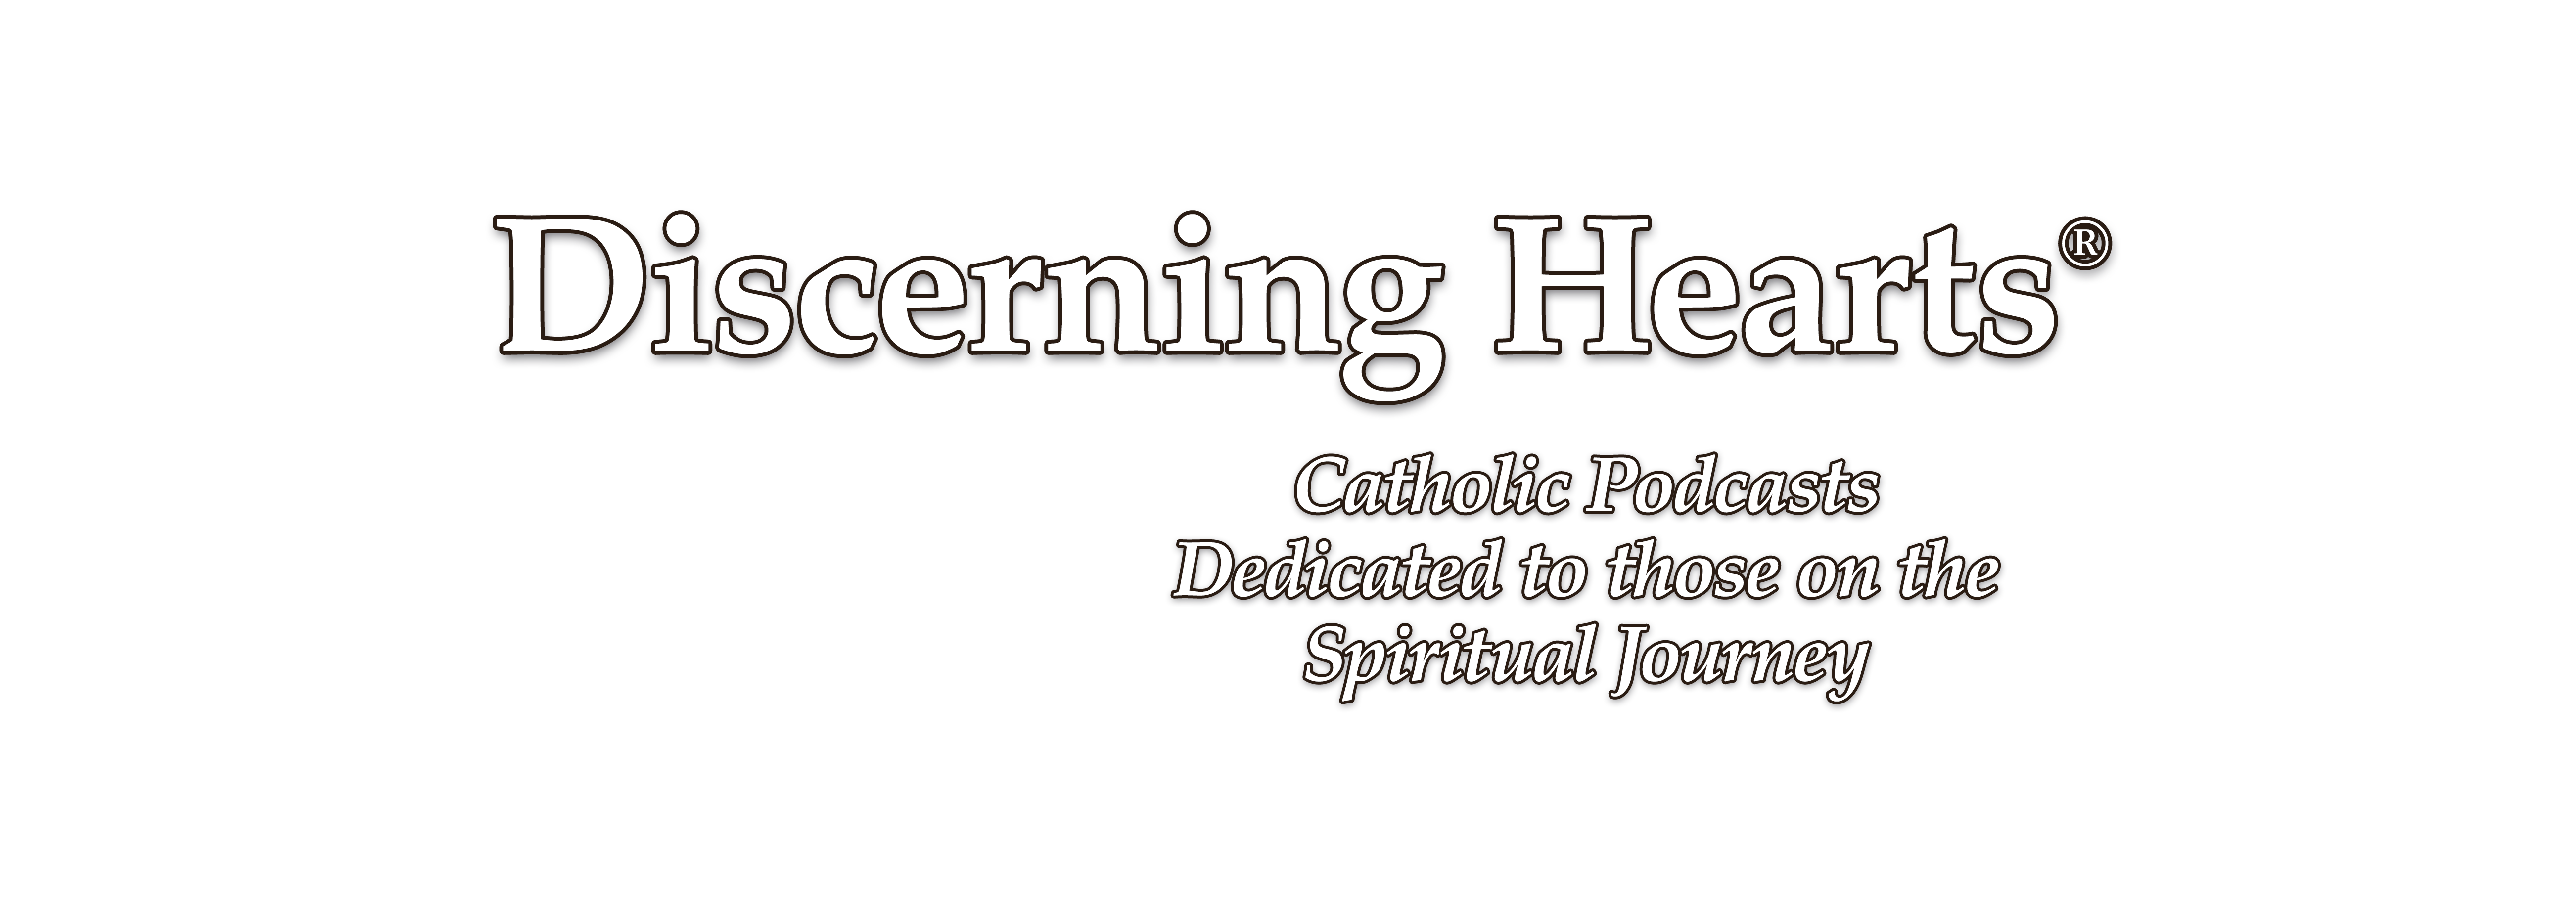 Discerning Hearts Catholic Podcasts